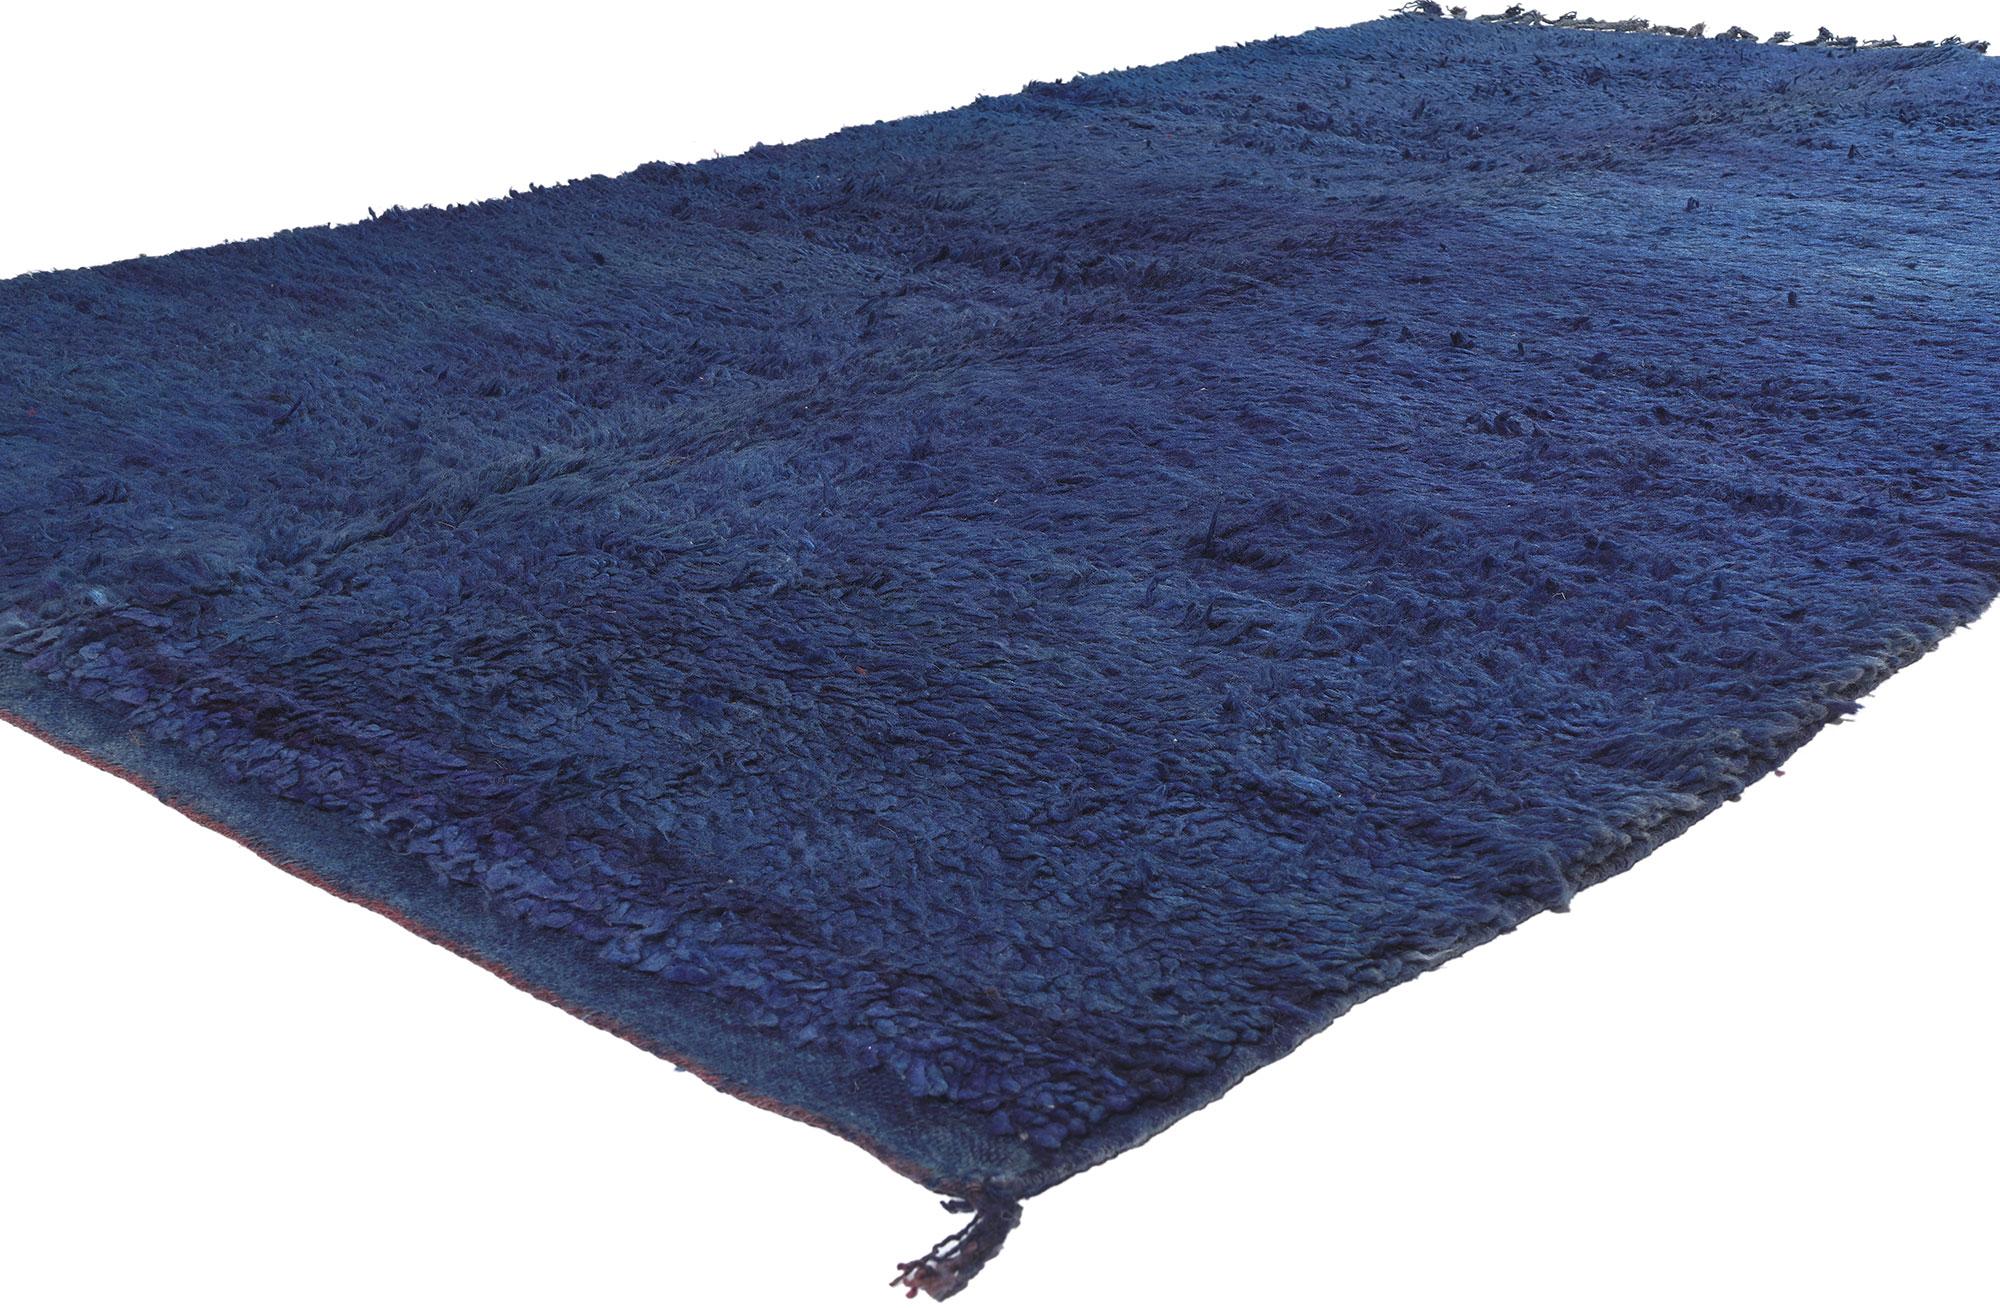 20645 Vintage Blau Beni MGuild Marokkanischer Teppich, 05'10 x 10'04.

Entdecken Sie im bezaubernden Reich der Shibui-Ästhetik die Faszination dieses handgeknüpften marokkanischen Beni Mguild-Teppichs aus Wolle - ein Meisterwerk aus dem westlichen